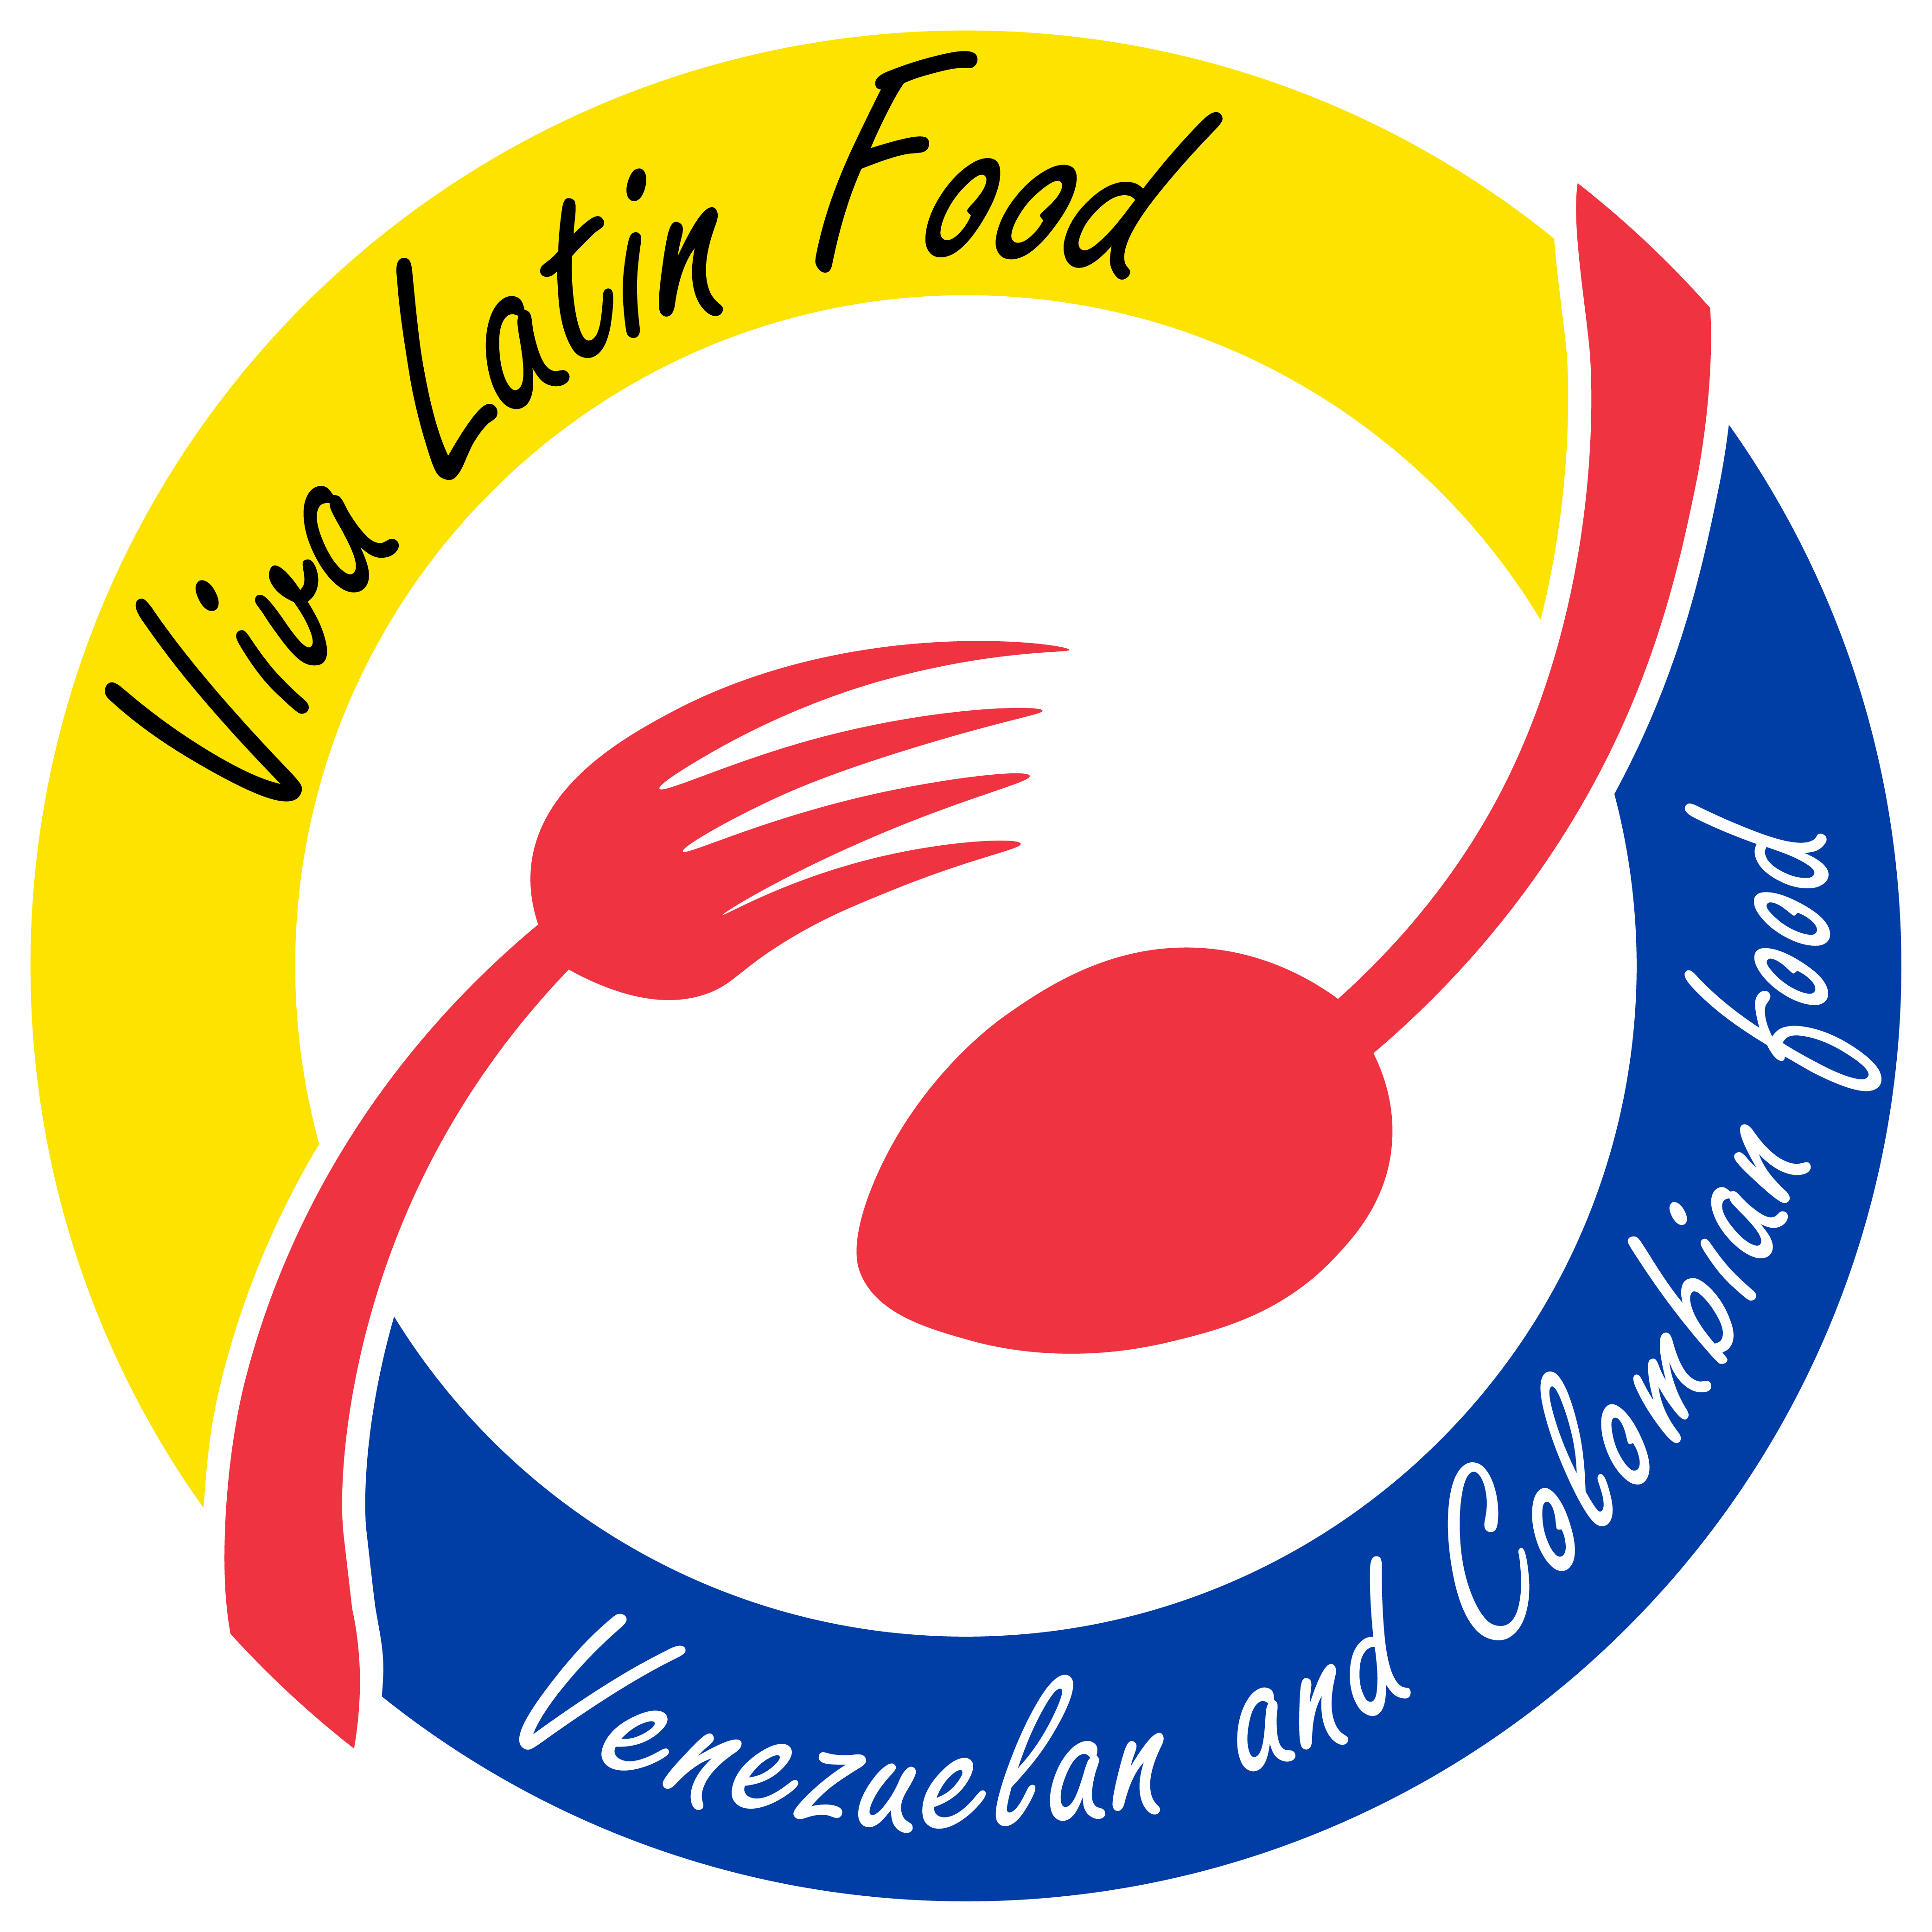 Viva Latin Food